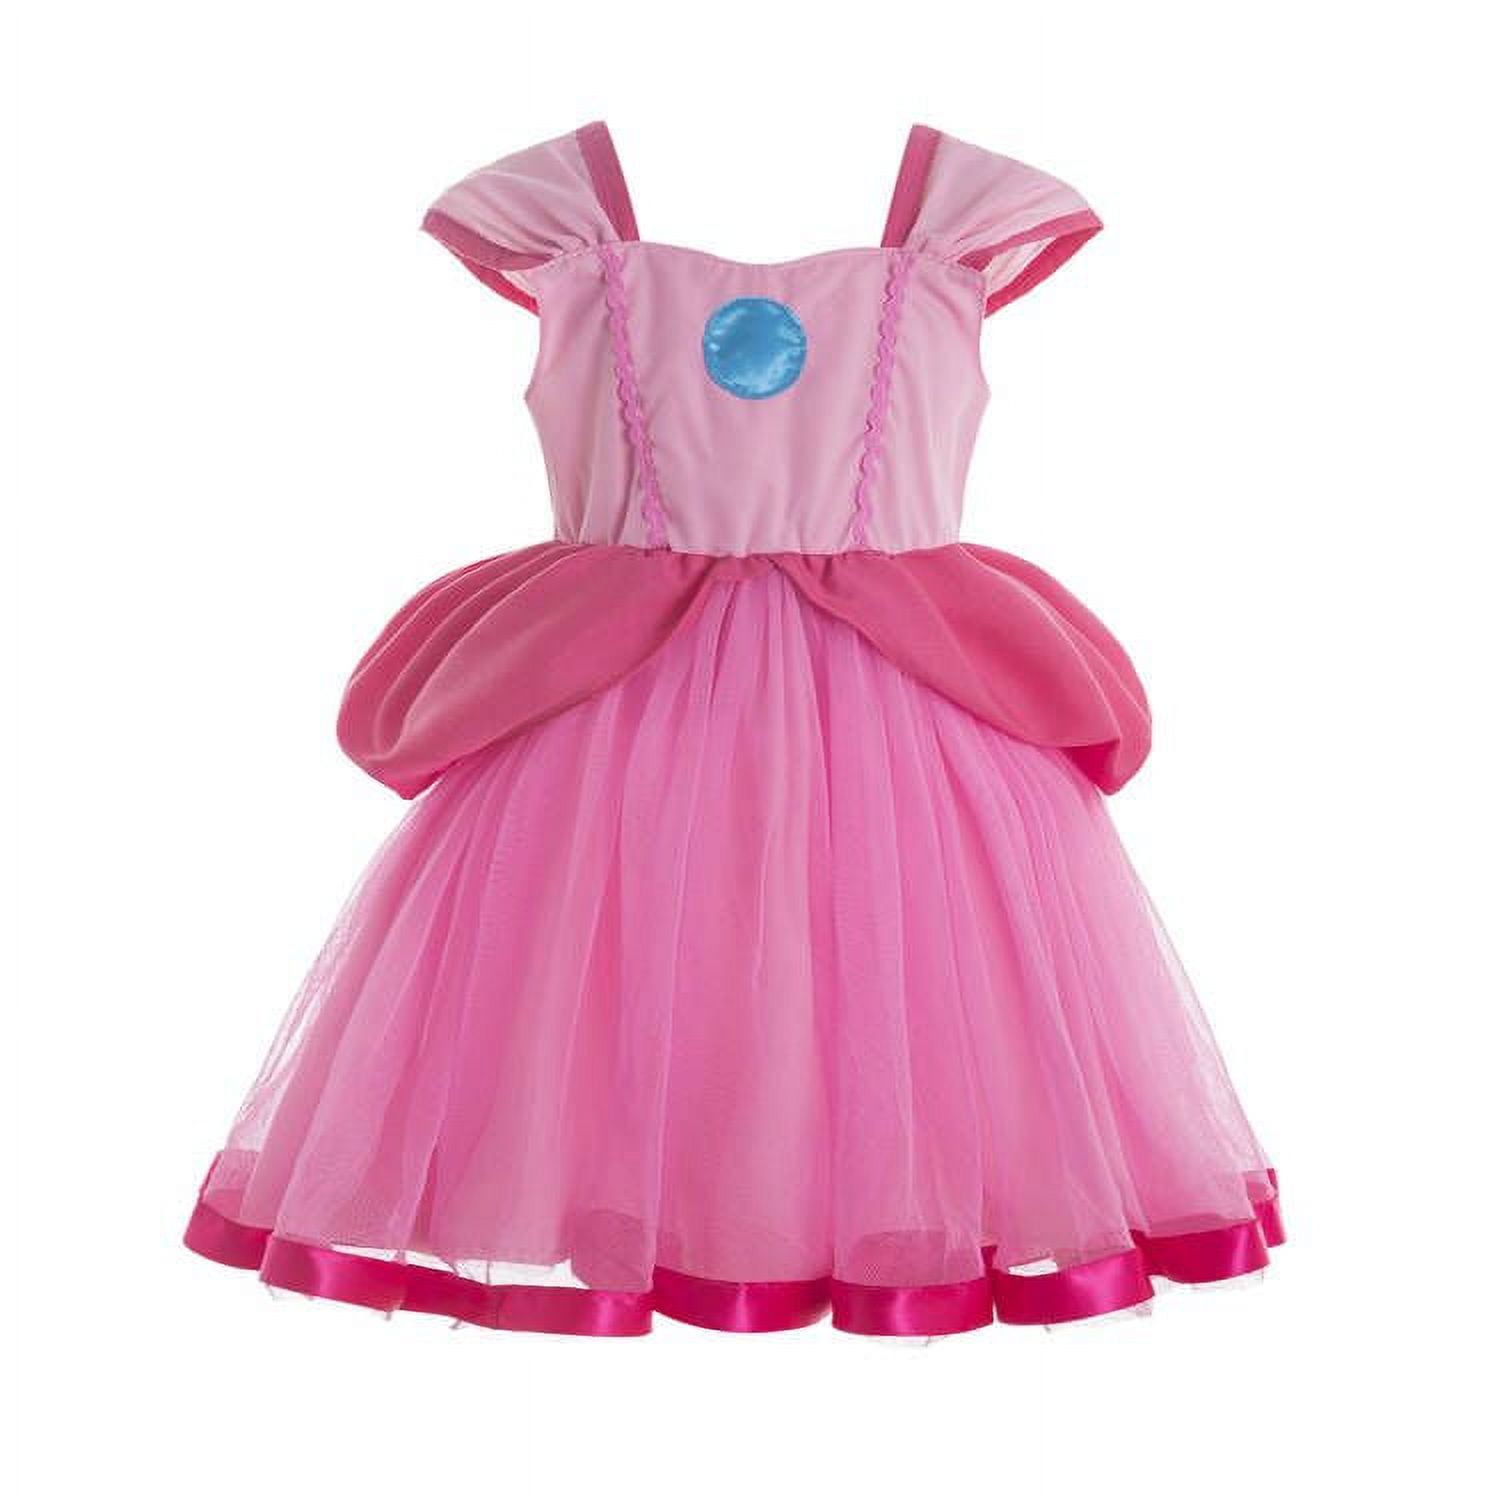 Princess Peach costume apron for women, Princess Peach dress up